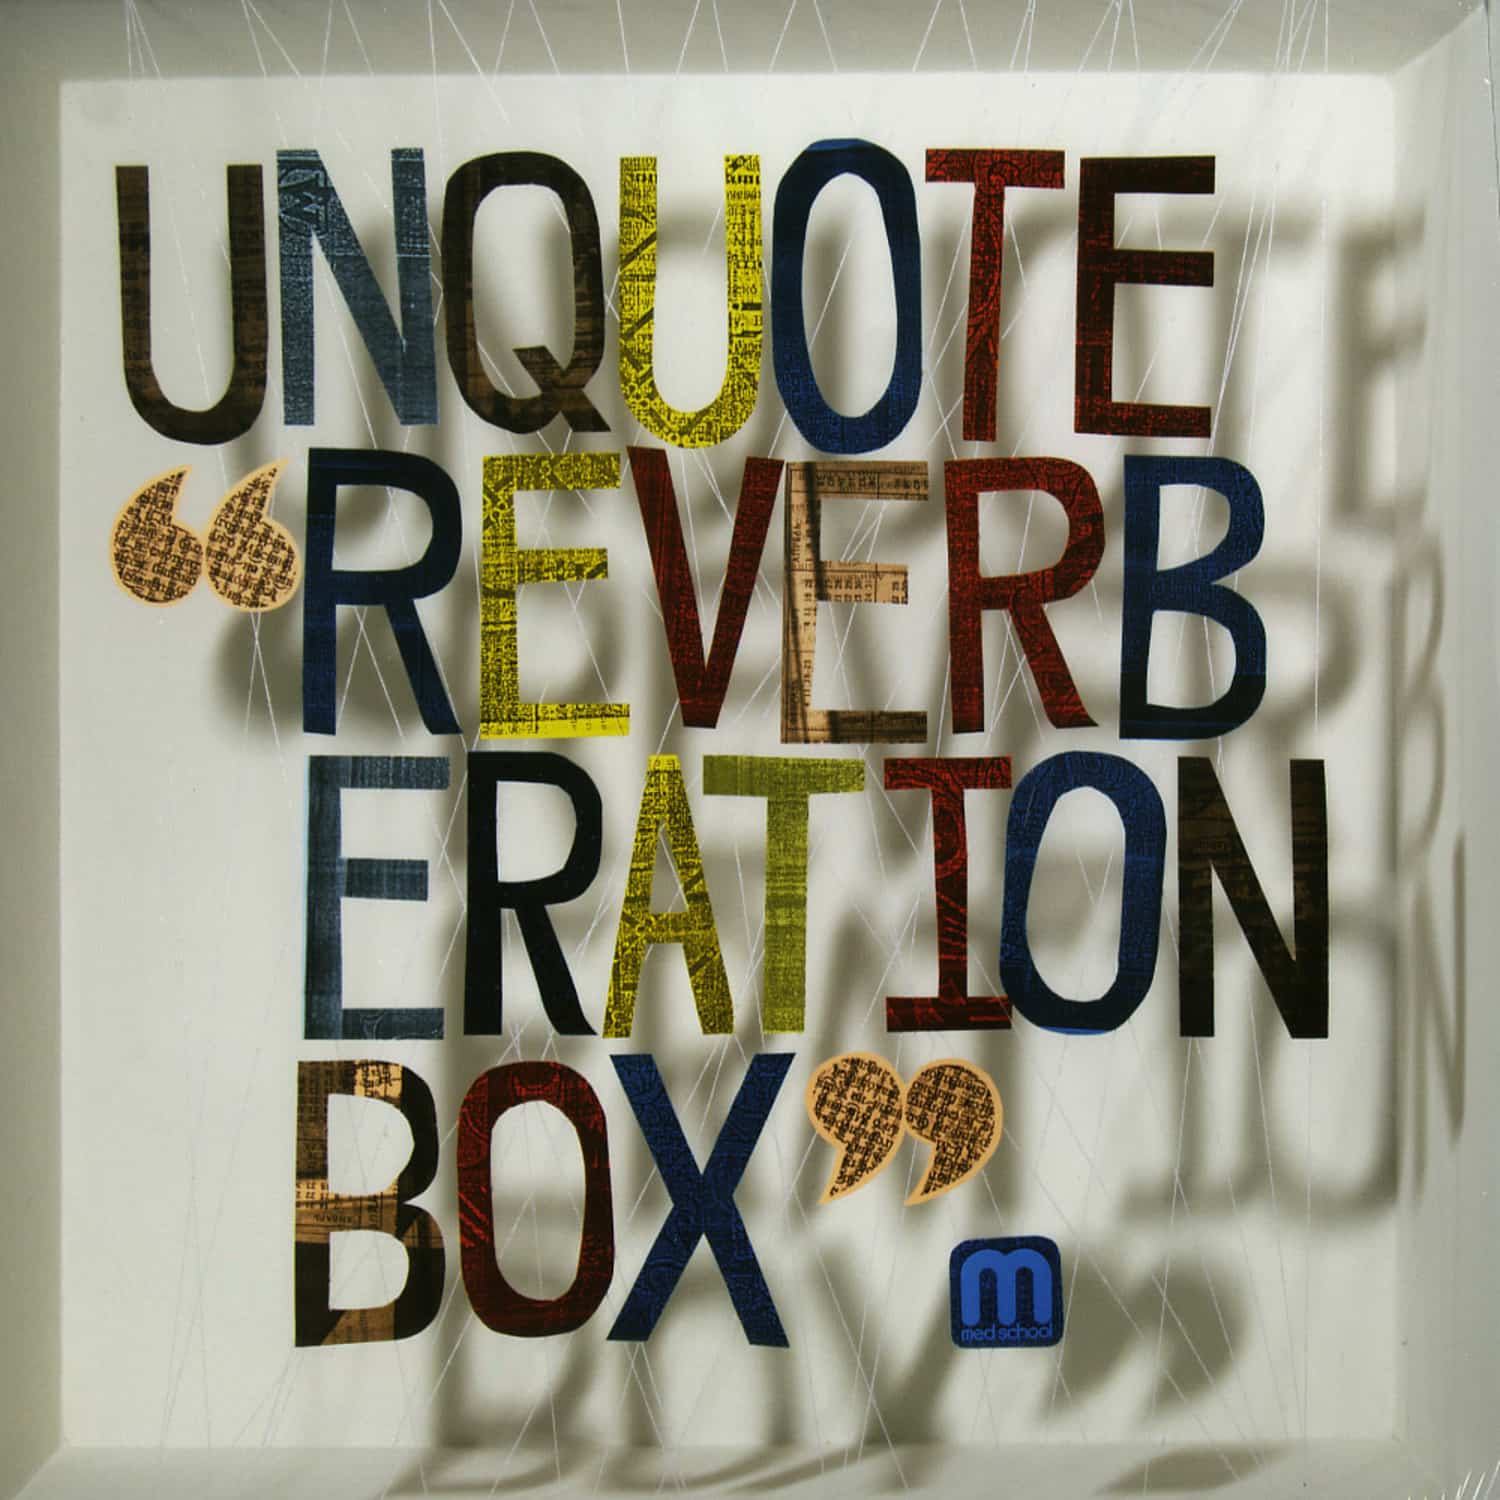 Unquote - REVERBERATION BOX 